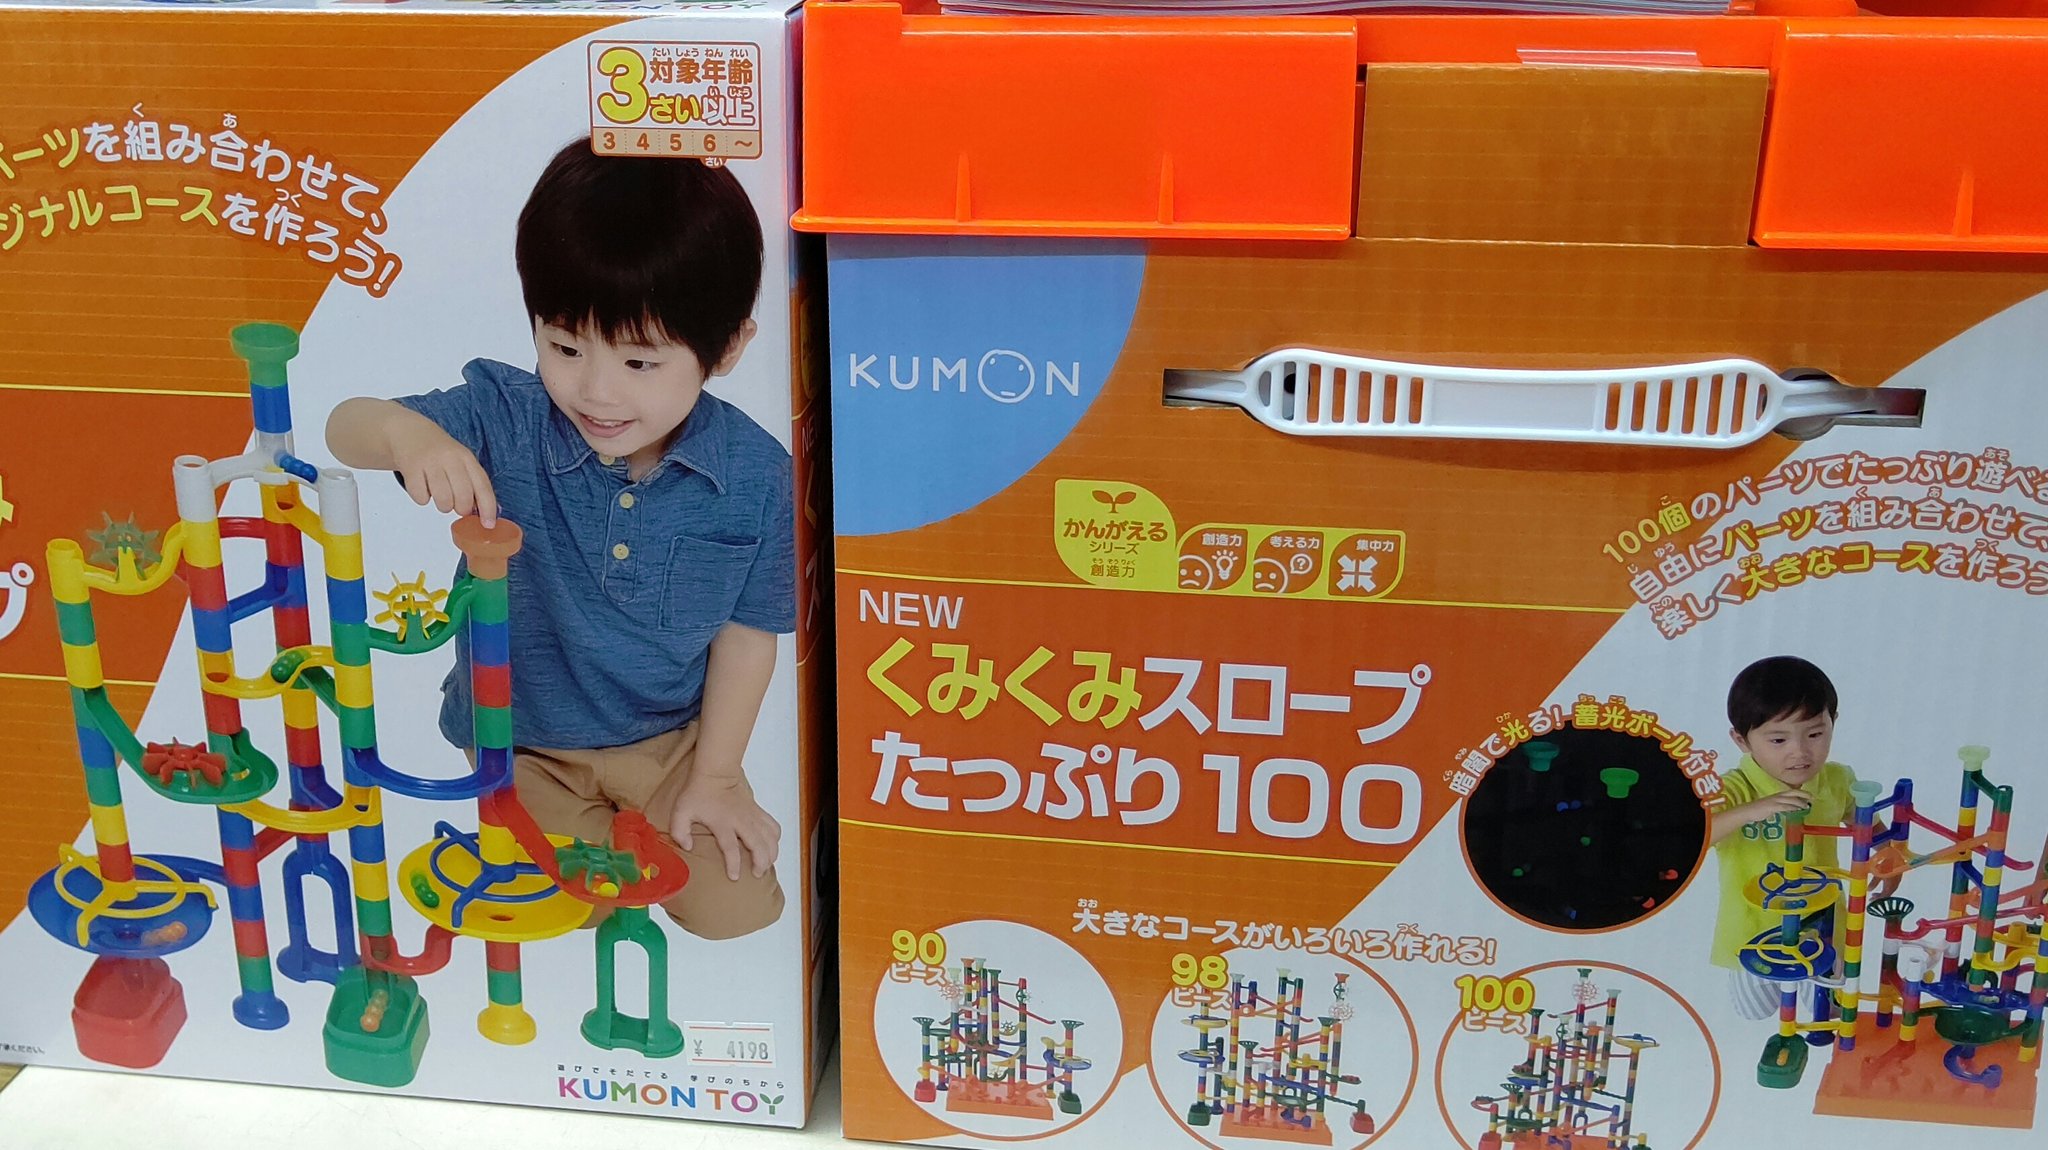 おもちゃ屋さんのねこ おもちゃの平野 Ar Twitter 札幌市及び近郊のサンタさんへ コロガスイッチドラえもん のお問い合わせが増えていますが 当店では既に売り切れております ﾍﾟｺｯ 似たようなボールを転がすおもちゃとして くみくみスロープ コロコロ